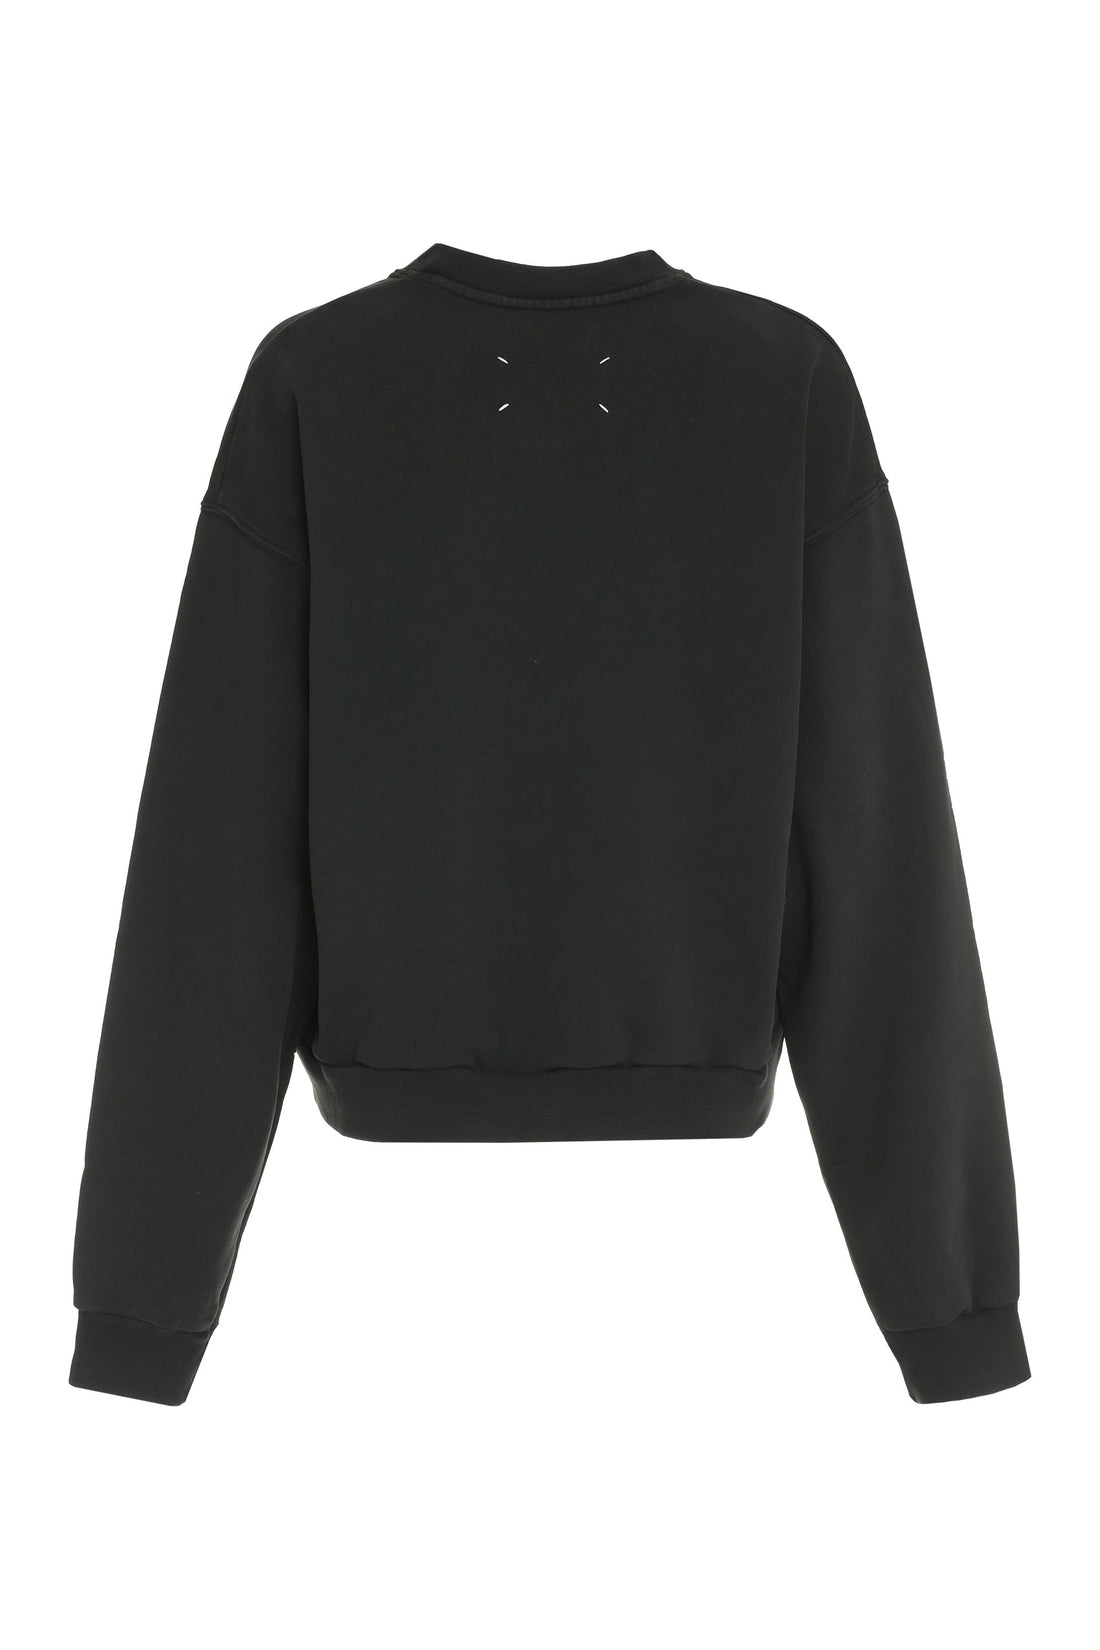 Maison Margiela-OUTLET-SALE-Cotton crew-neck sweatshirt with logo-ARCHIVIST